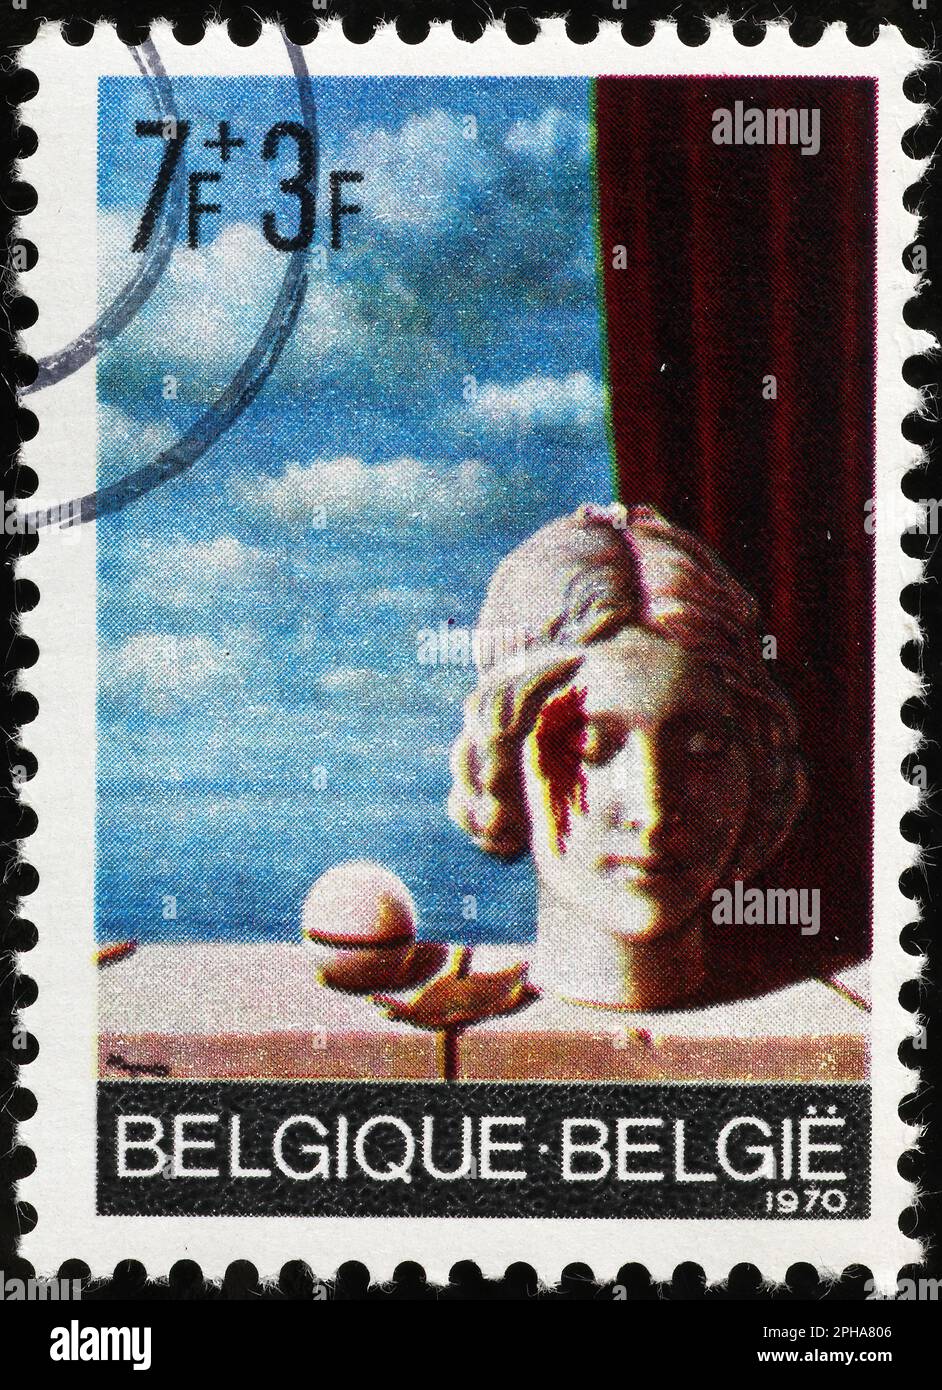 Peinture surréaliste de René Magritte sur timbre de Belgique Banque D'Images